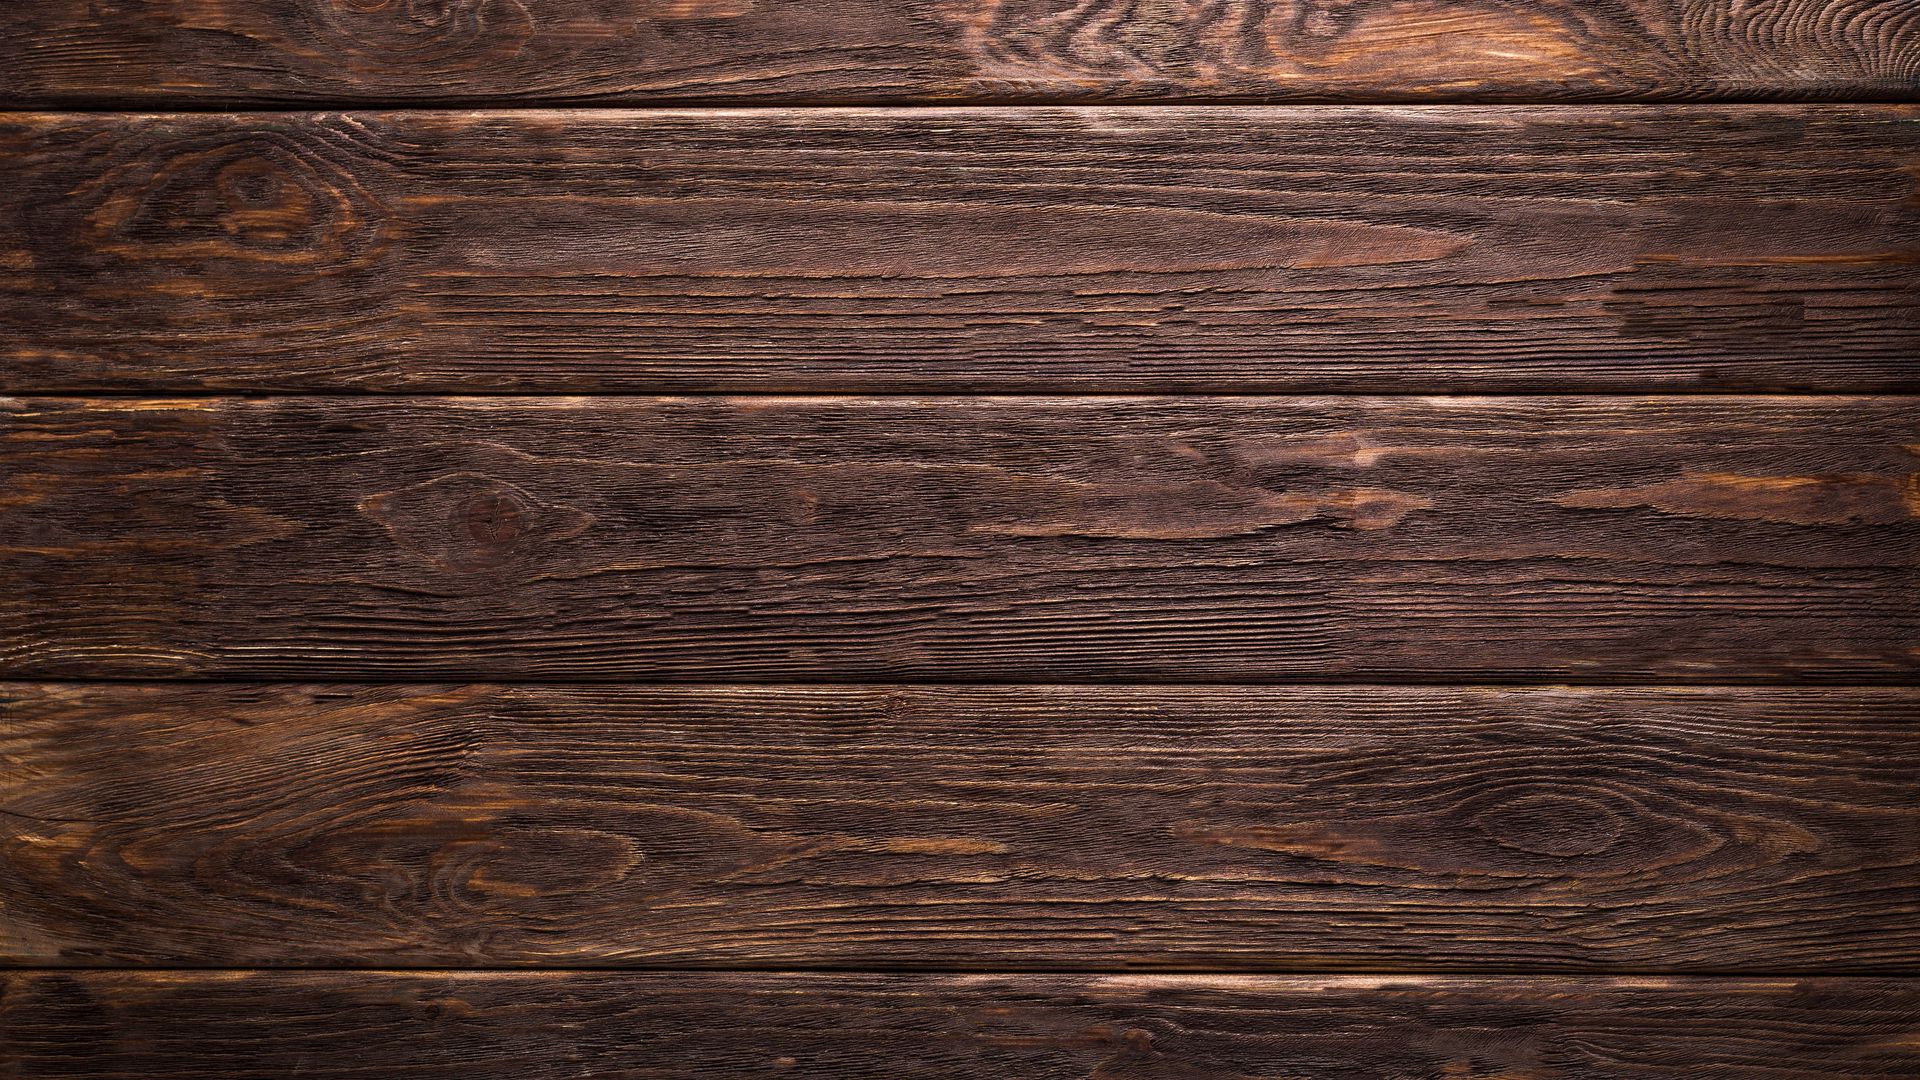 Tải hình nền gỗ bề mặt ván ép: Hình ảnh nền với bề mặt ván ép tự nhiên đang trở thành xu hướng mới trong giới thiết kế hình nền. Tải nhanh và dễ dàng những hình nền gỗ bề mặt ván ép chất lượng cao để tôn lên vẻ độc đáo và tự nhiên cho màn hình của bạn.